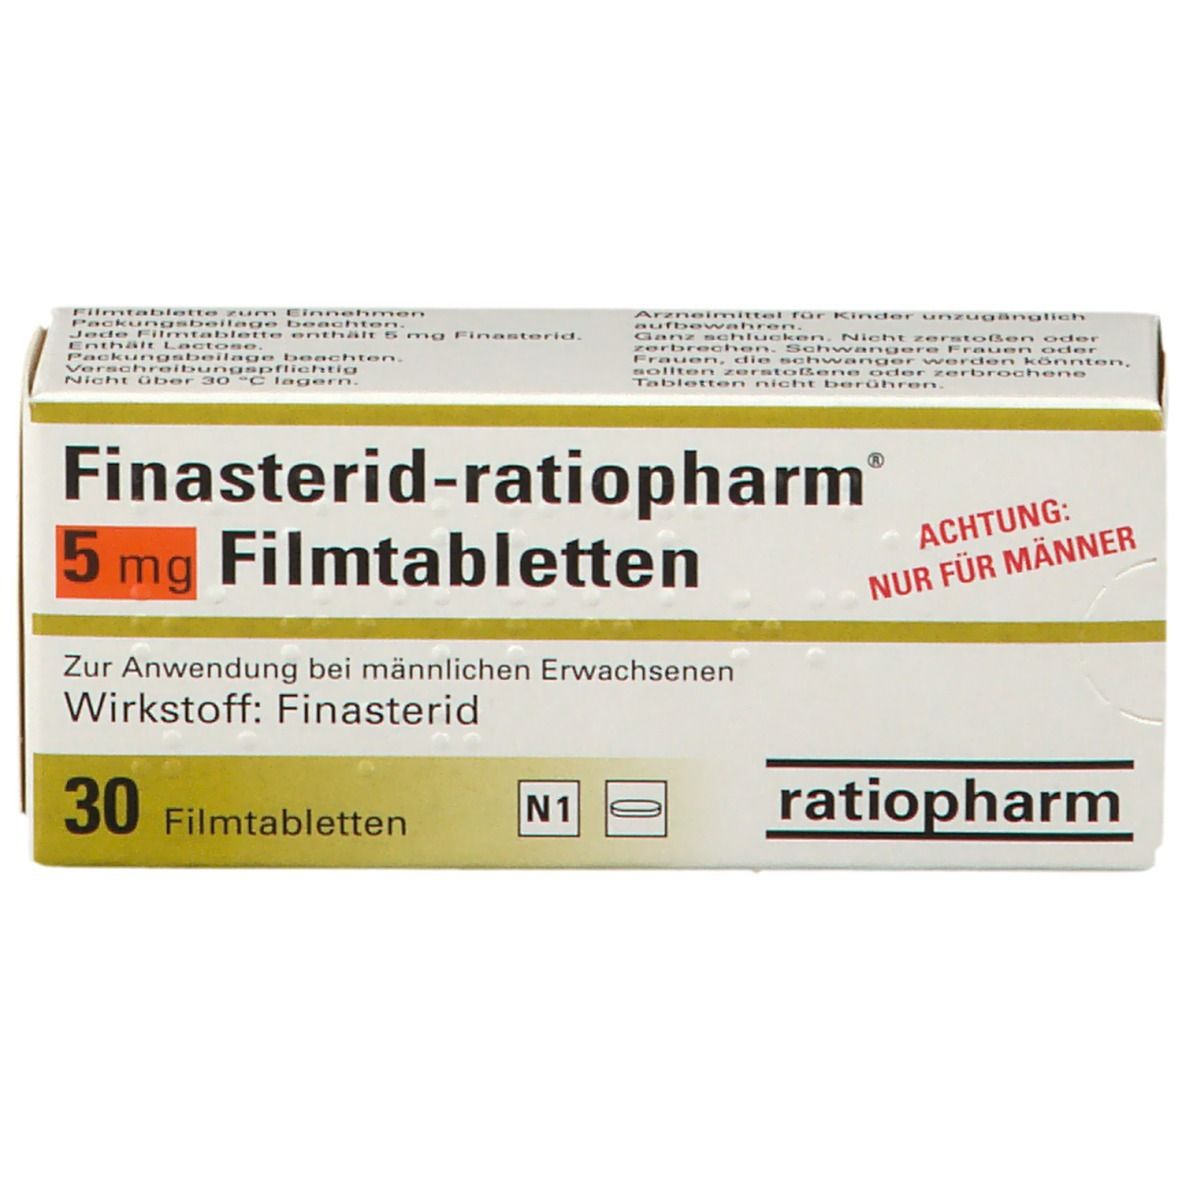 Finasterid-ratiopharm® 5 mg